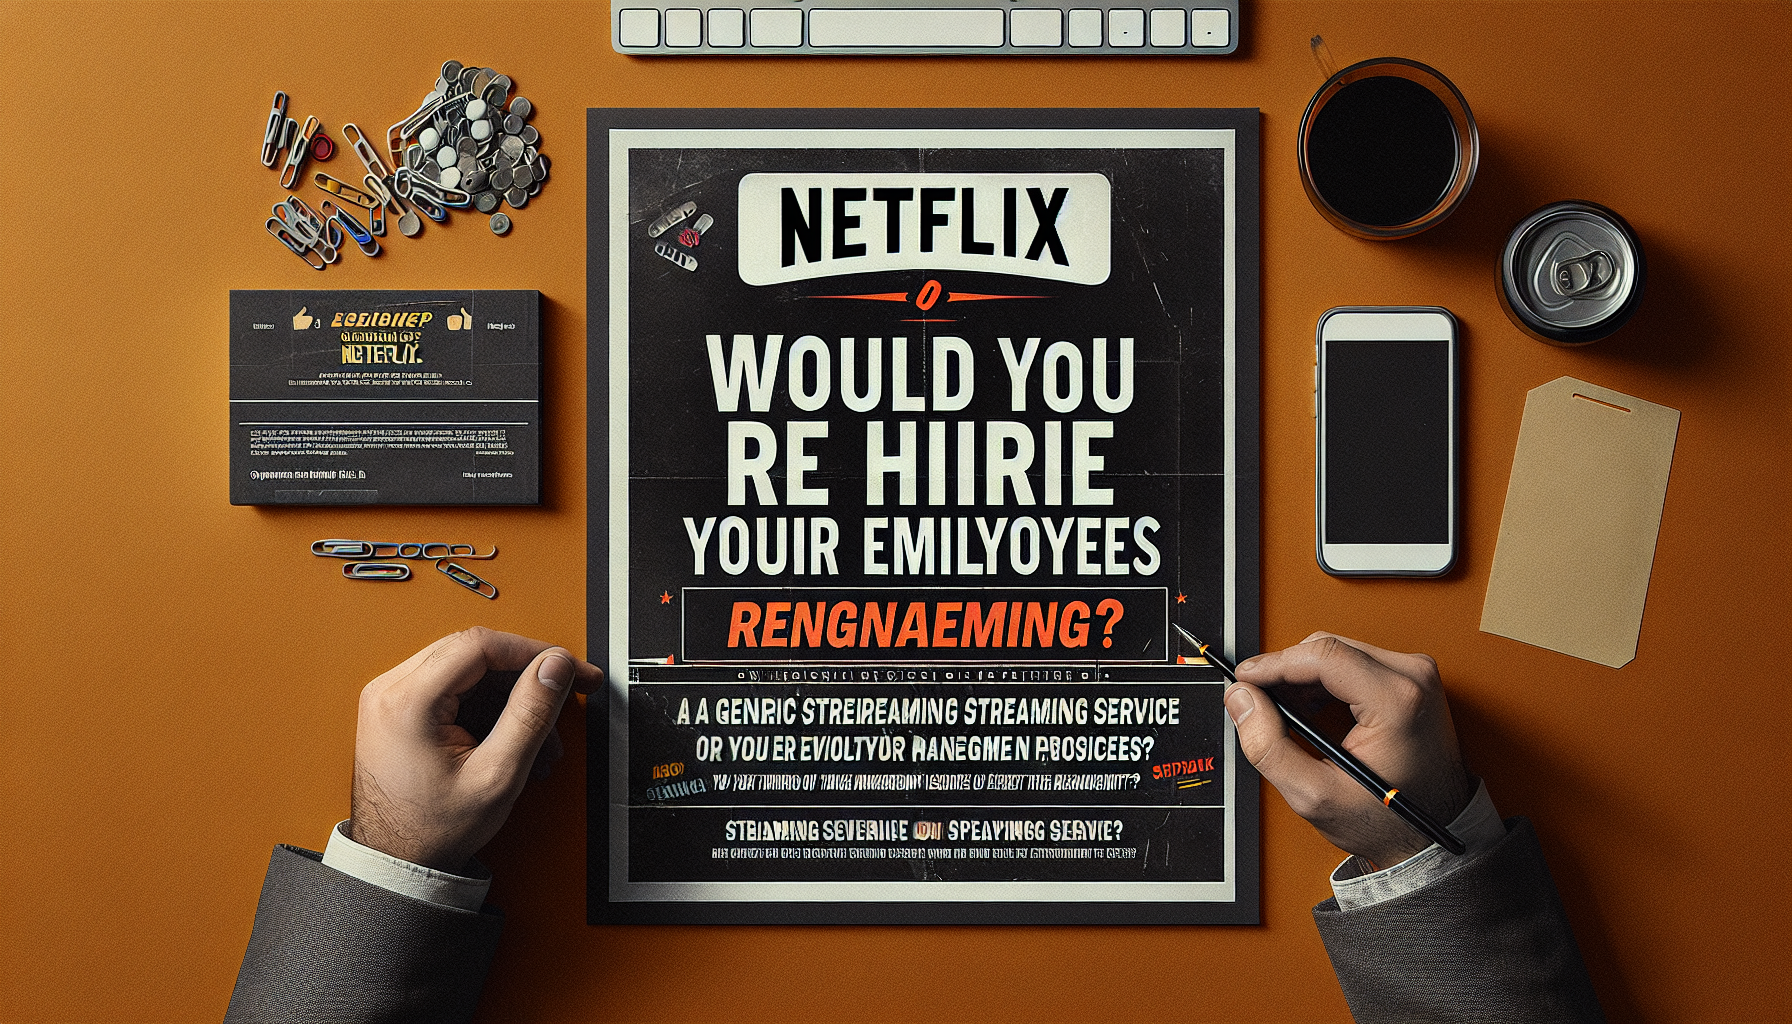 Netflix incoraggia i manager a prendere in considerazione la possibilità di riassumere i propri dipendenti e di licenziarli se la risposta è no. saperne di più sul loro approccio alla gestione dei dipendenti.